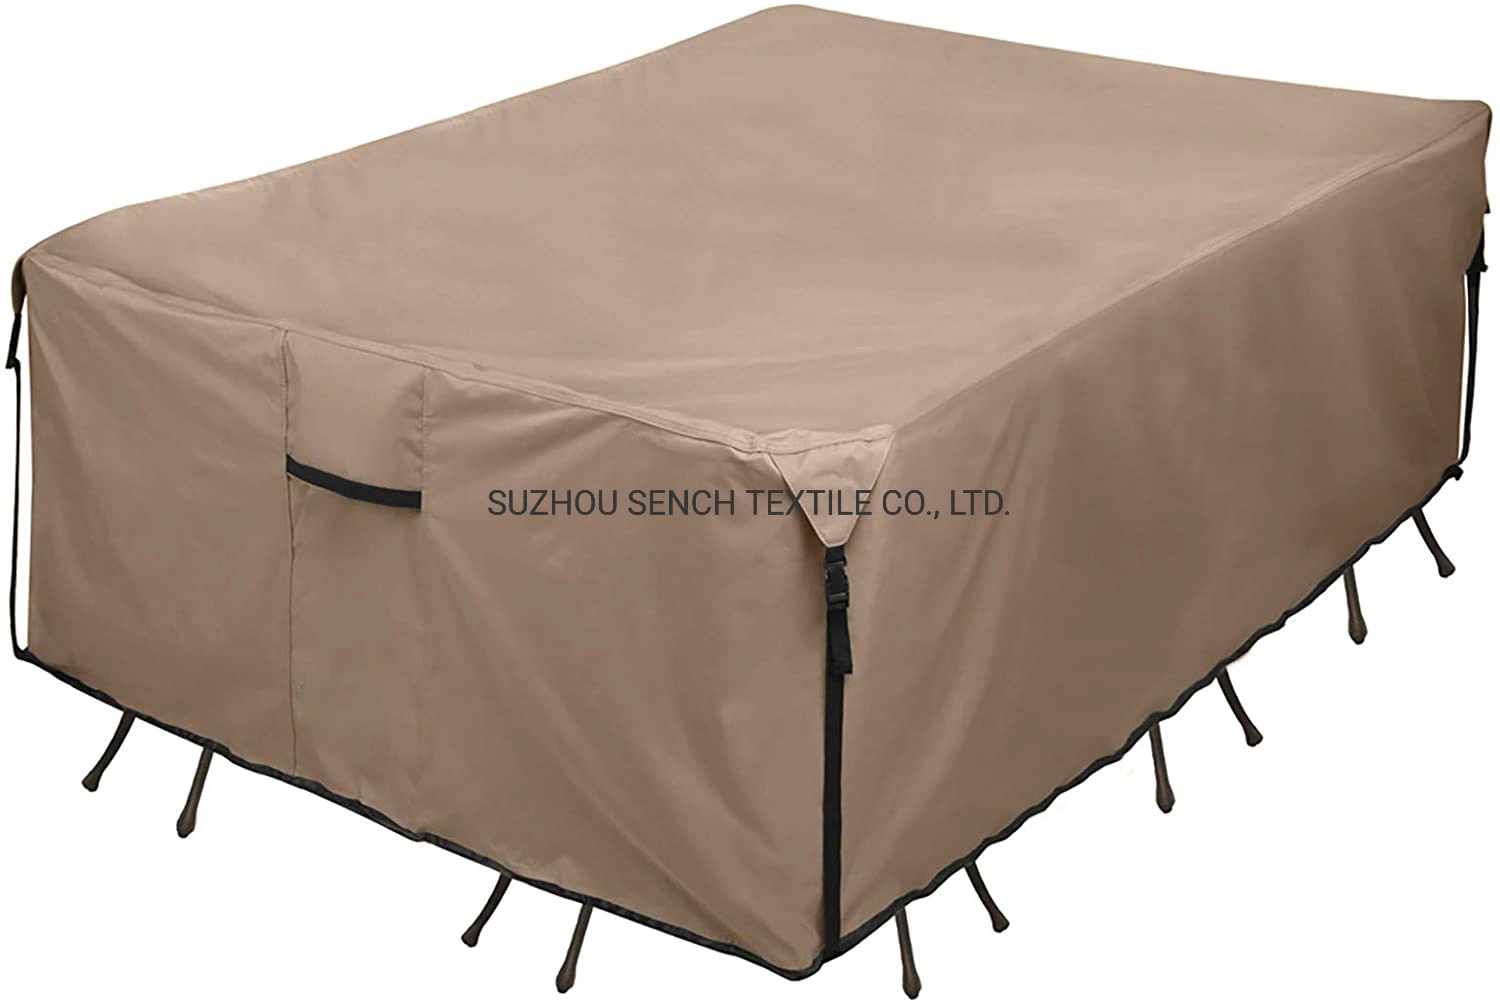 Patio rectangulaire capot table Heavy Duty - 600D Tough toile étanche extérieur Table et chaises mobilier à usage général couvrir Customed de taille